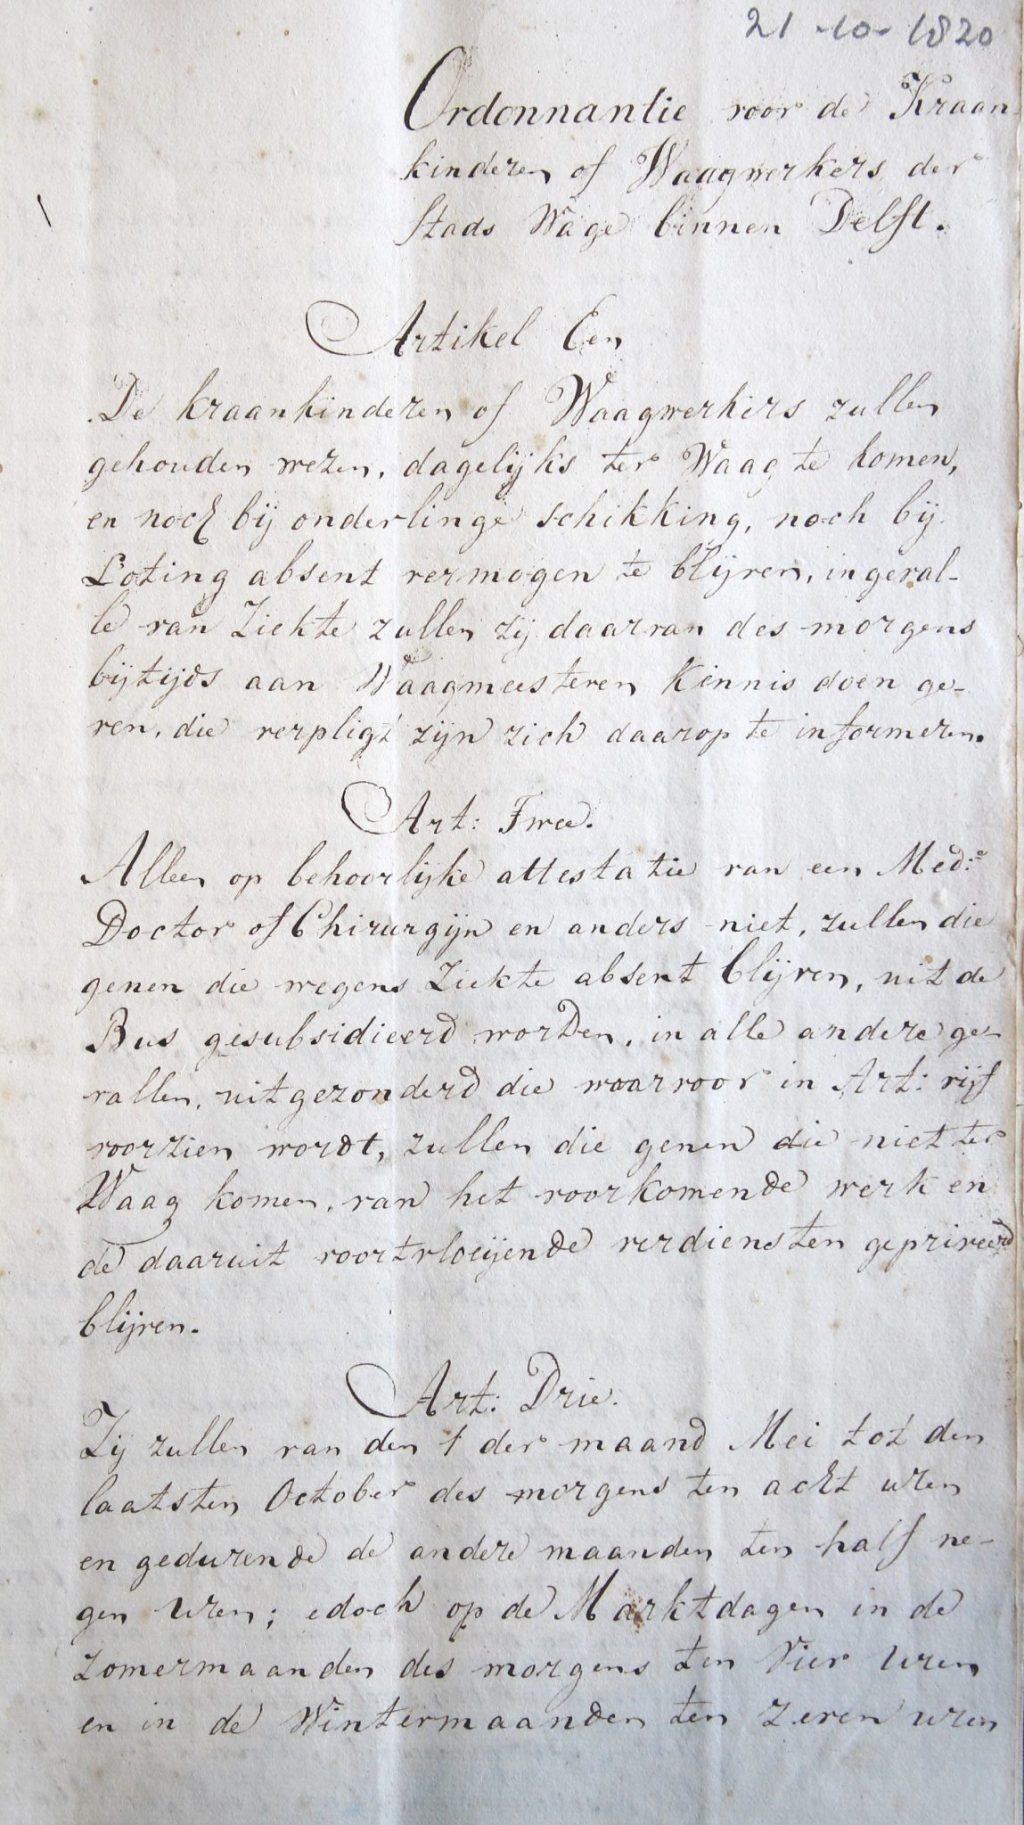 Ordonnantie voor de kraankinderen of waagwerkers van de Stadswaag, 1820 (Archief 2, inv.nr 6321)